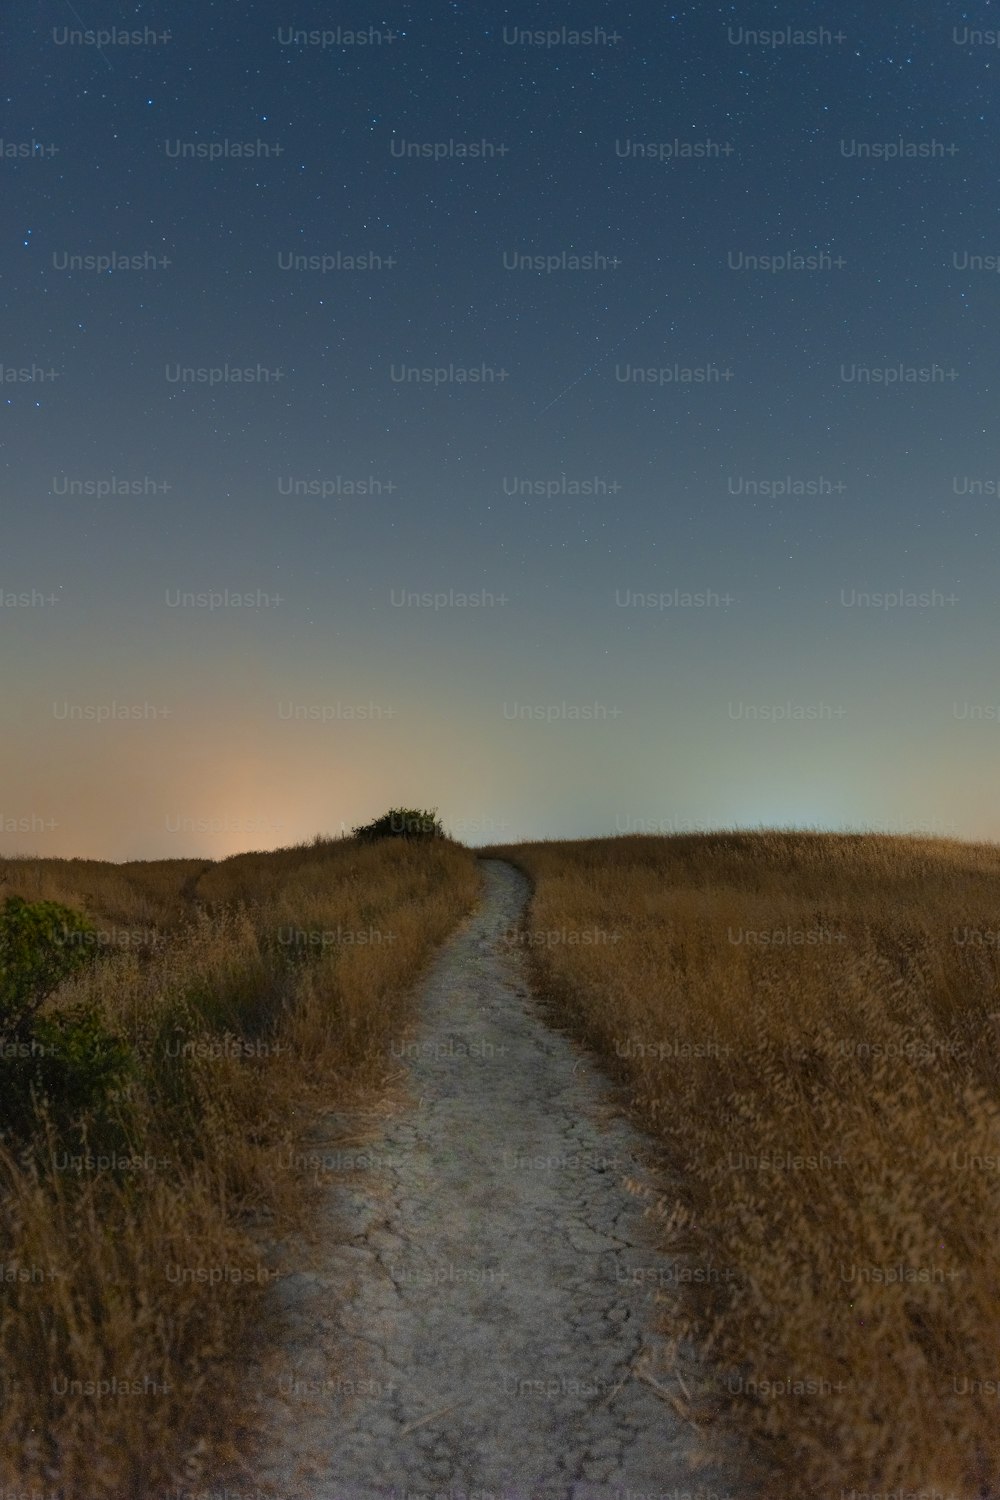 a dirt path in a grassy field under a night sky